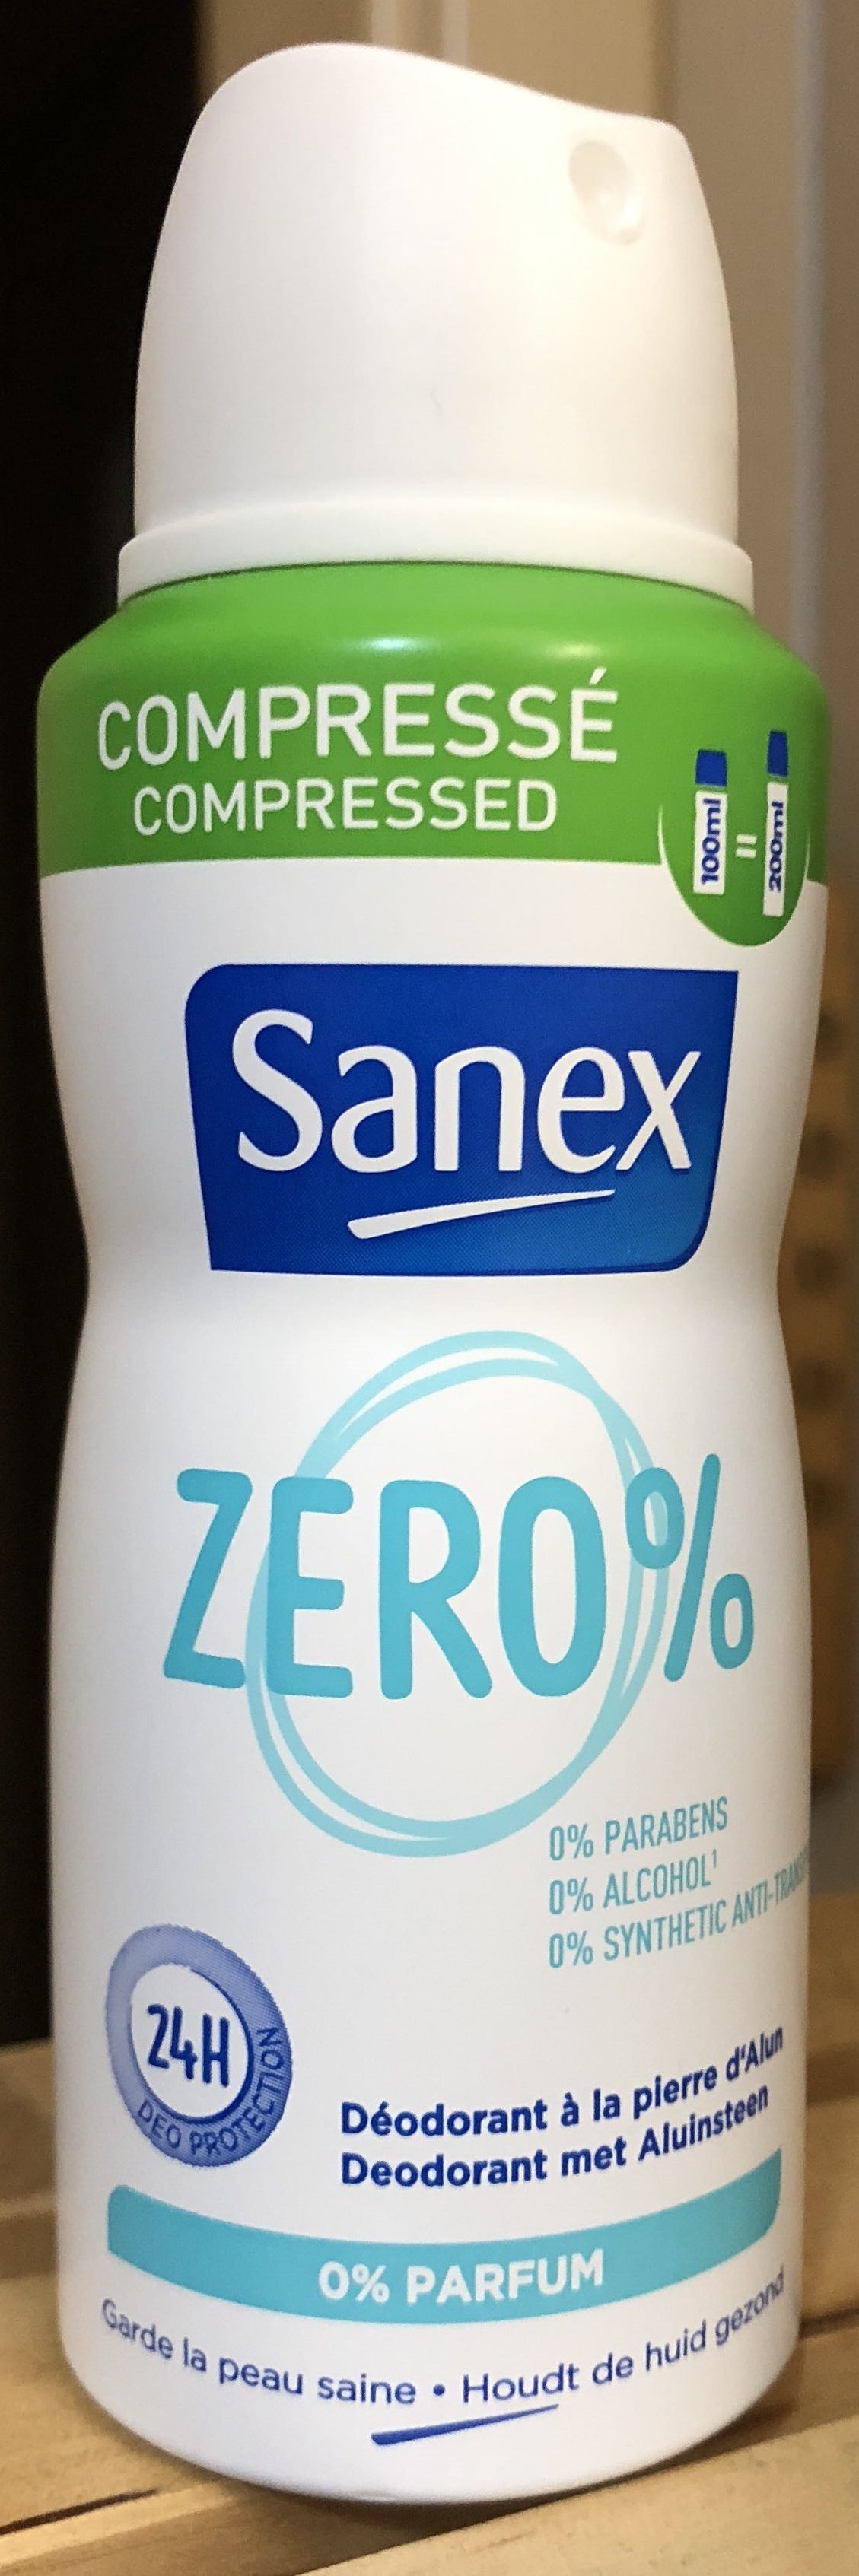 Sanex zero% - Produto - fr